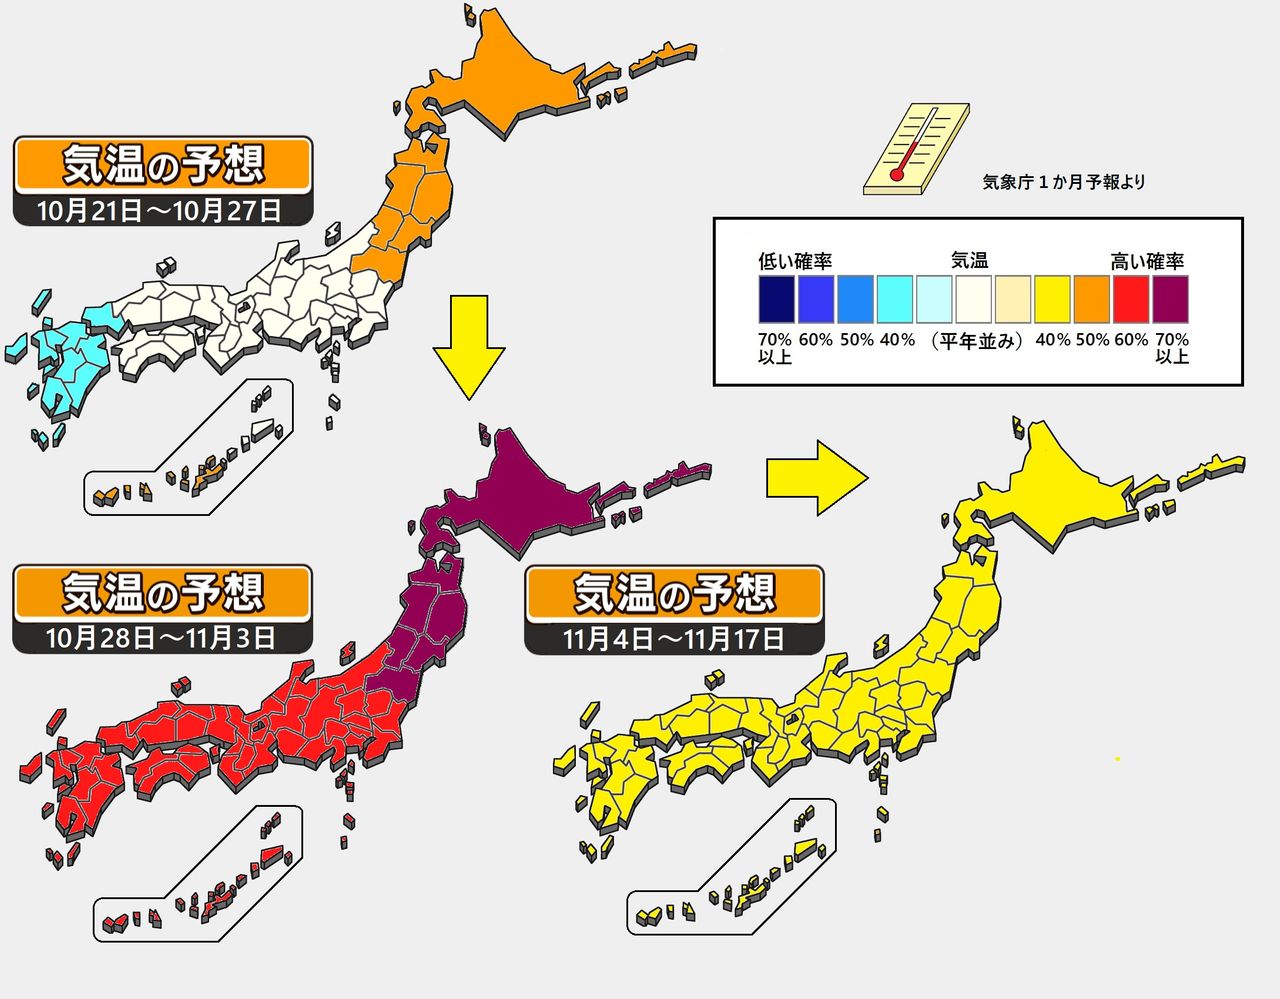 【1か月予報】北日本を中心に高温傾向